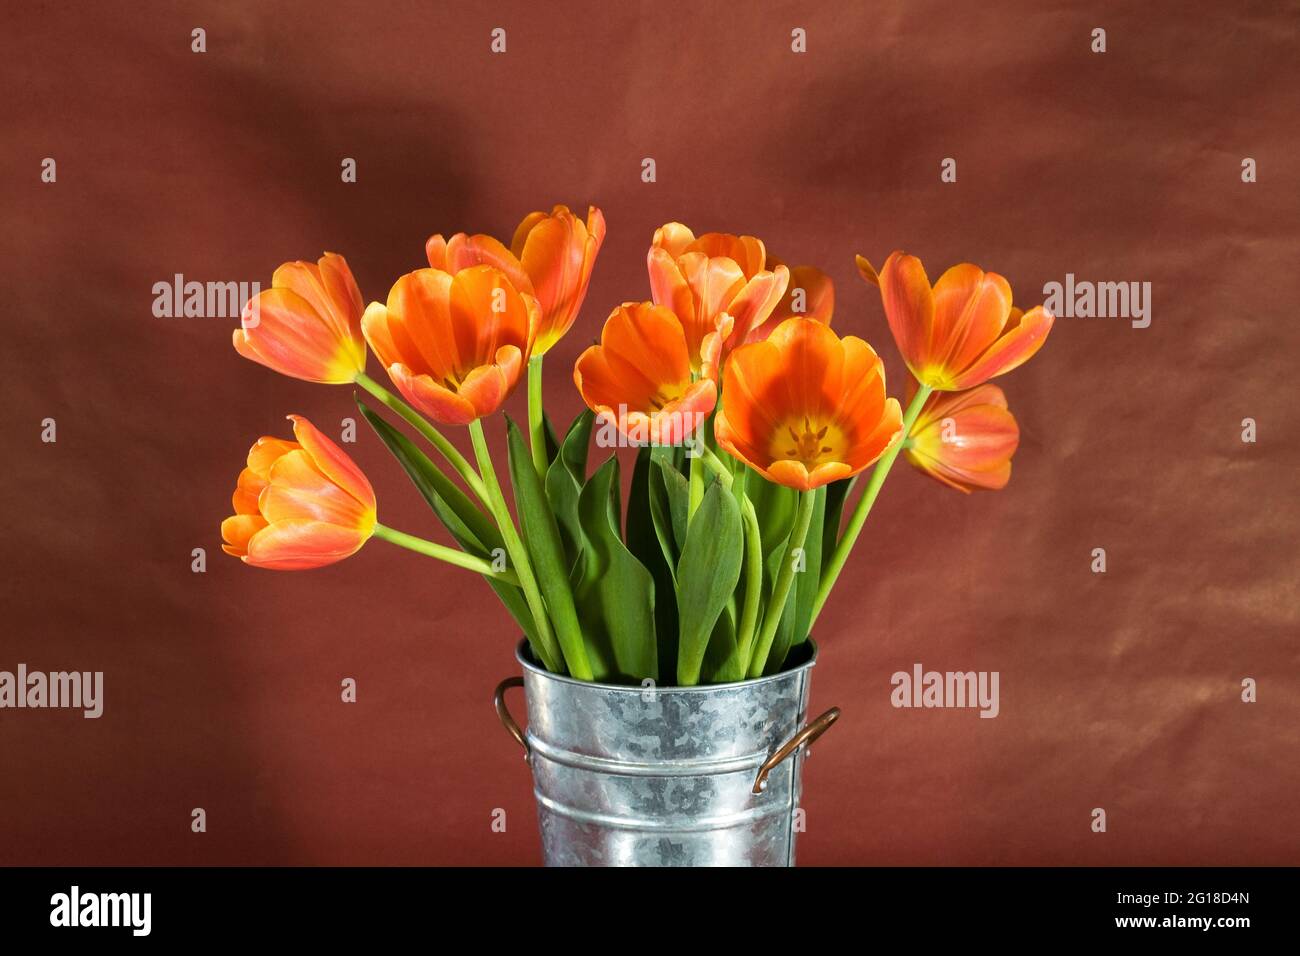 Porträt von rosa und orangen Haustuben in einer Vase. Tulpen sind ein frühlingsblühender, mehrjähriger krautiger, bulbiferer Geophyt. Stockfoto